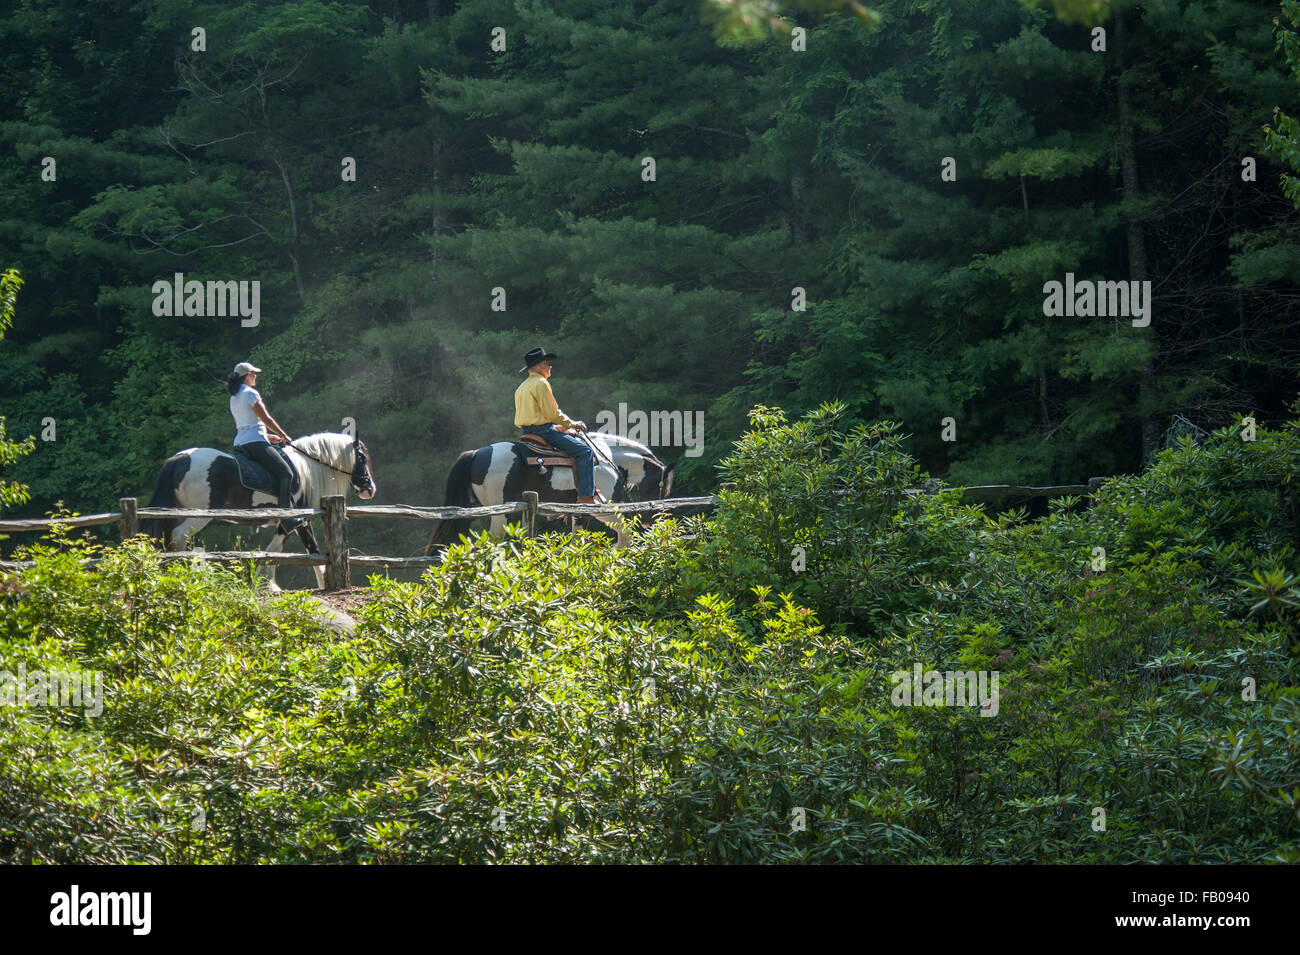 Zwei Reiter auf Pferden im Wald Stockfoto